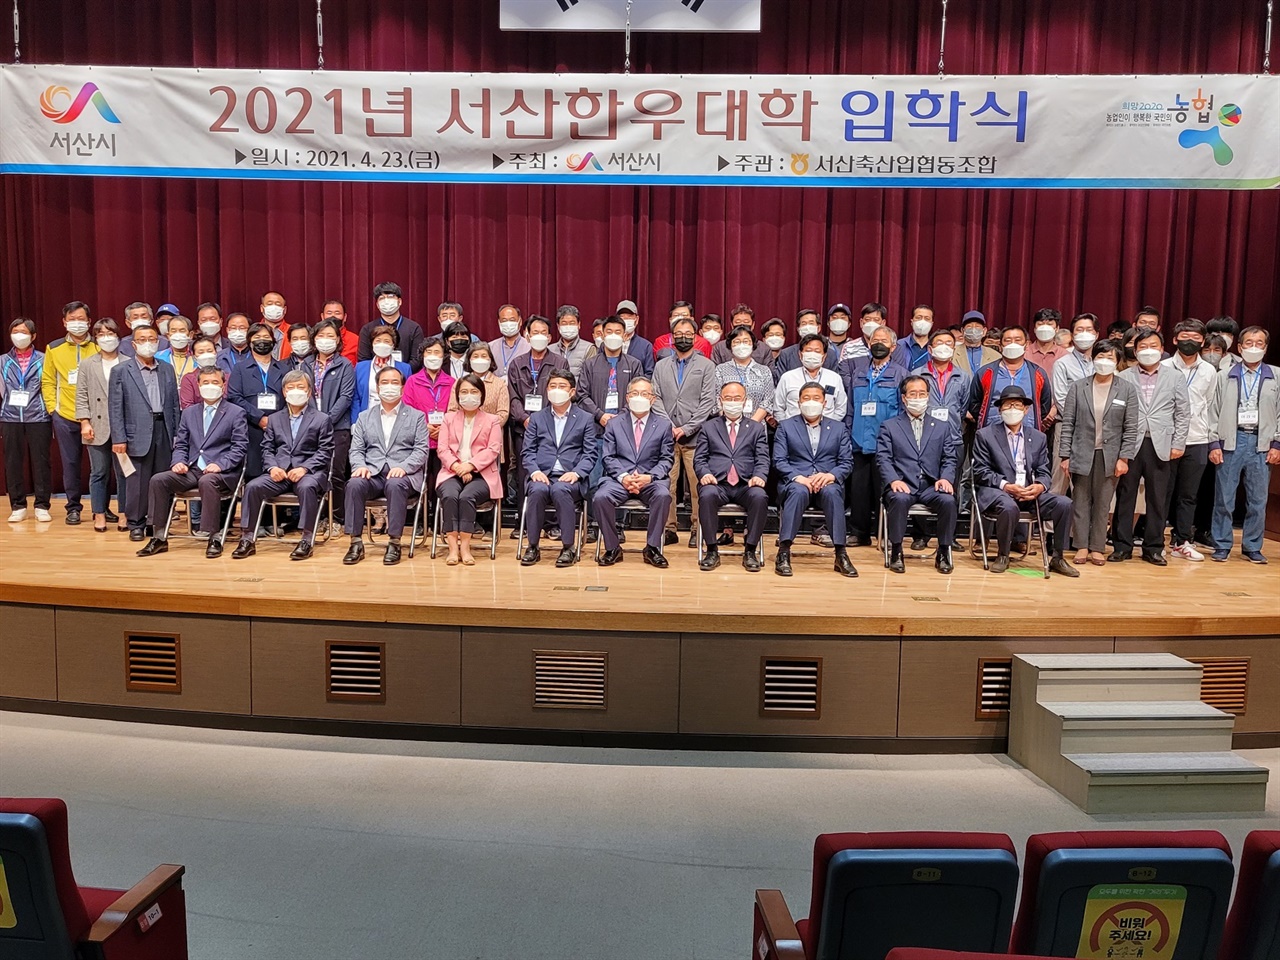  서산한우대학이 23일 입학식을 개최하고, 지역 축산리더 양성에 나섰다.